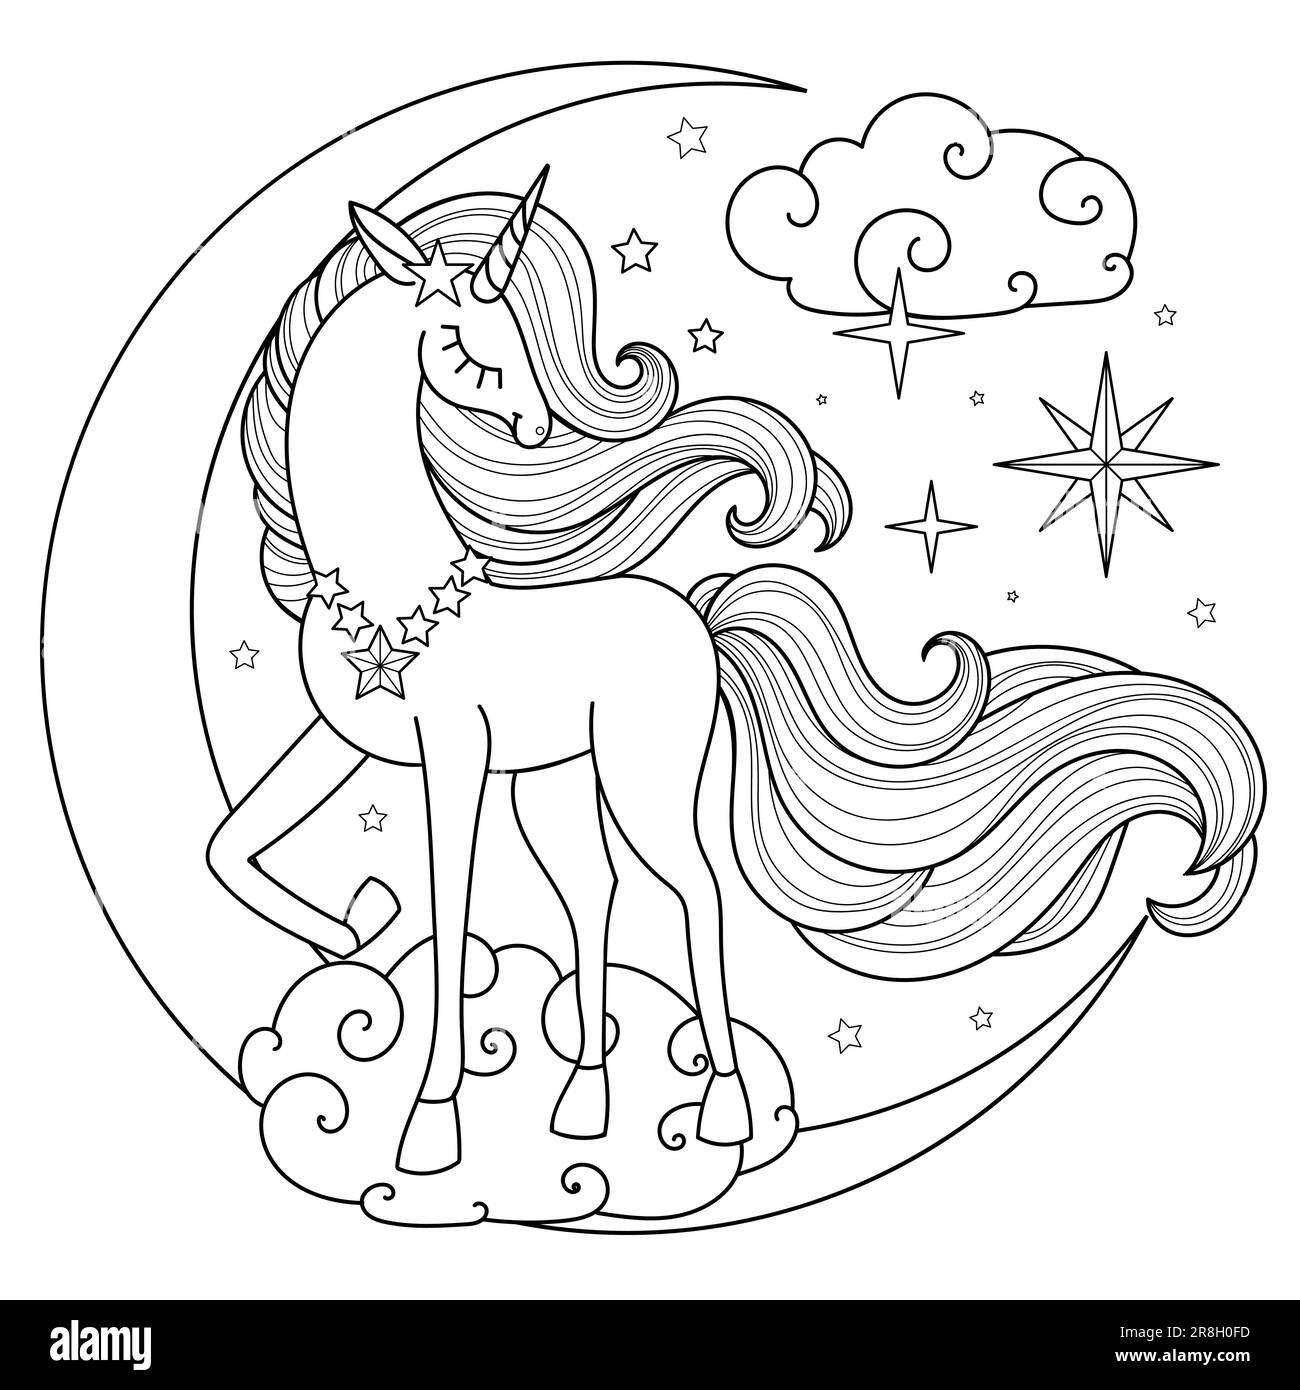 Ein wunderschönes Einhorn mit langer Mähne und Schwanz auf dem Mond. Schwarzweiß-Linearzeichnung. Für die Gestaltung von Malbüchern, Drucken, Postern, c Stock Vektor